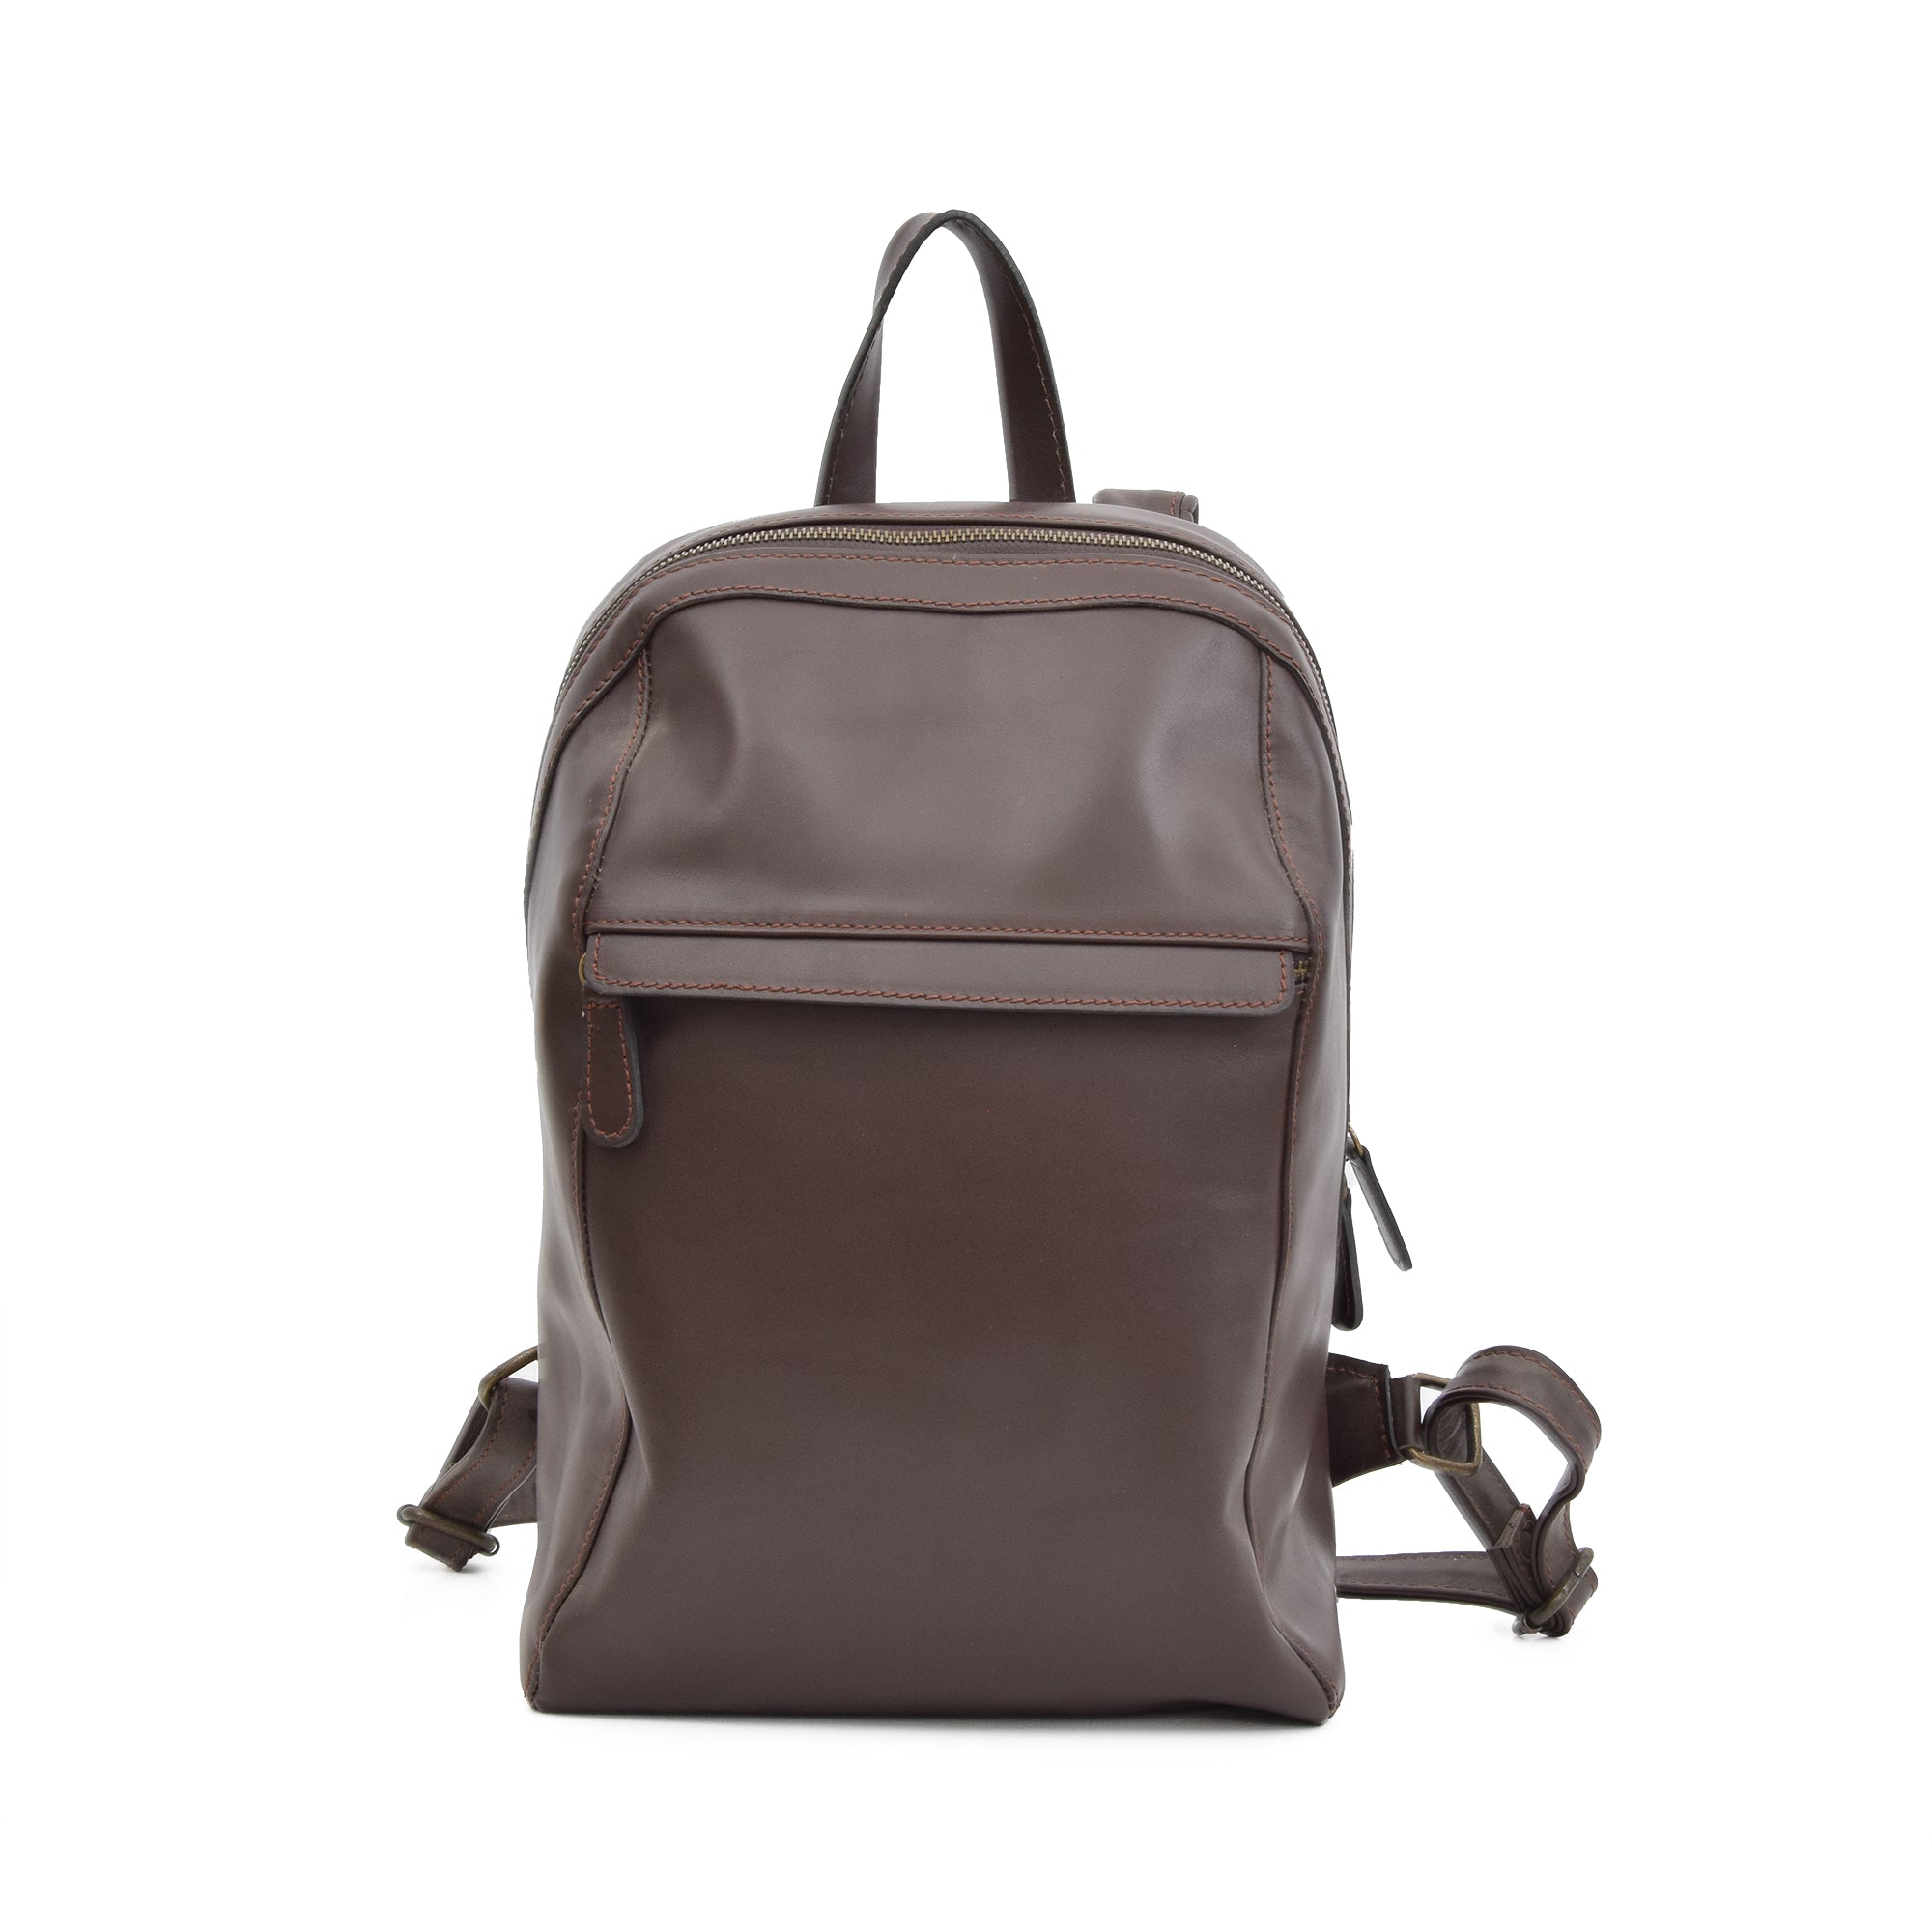 Daelysira Leather Backpacks